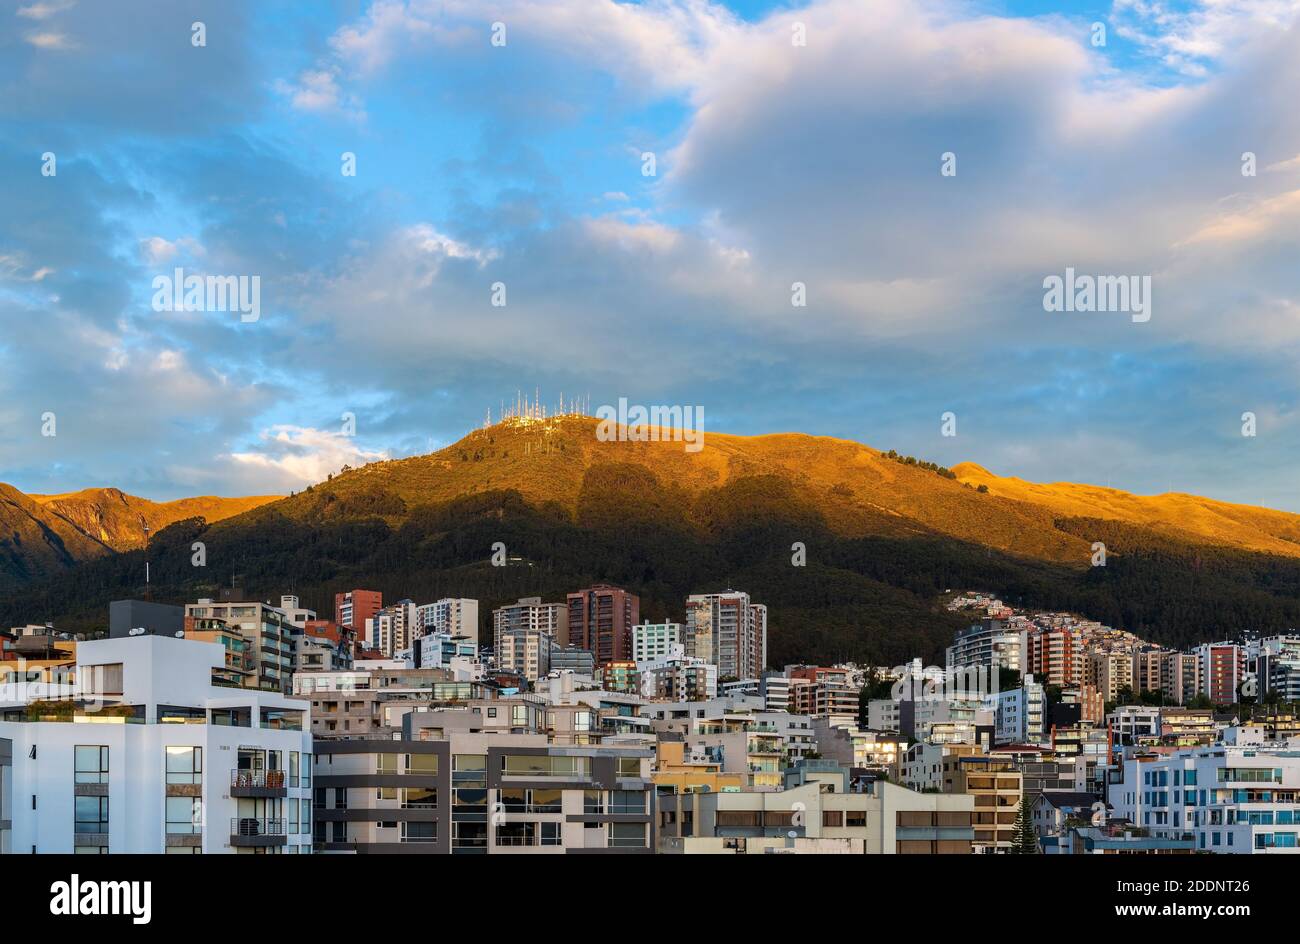 Paysage urbain et vue aérienne avec gratte-ciels de la ville moderne de Quito au lever du soleil avec le volcan Pichincha, capitale de l'Equateur dans les Andes. Banque D'Images